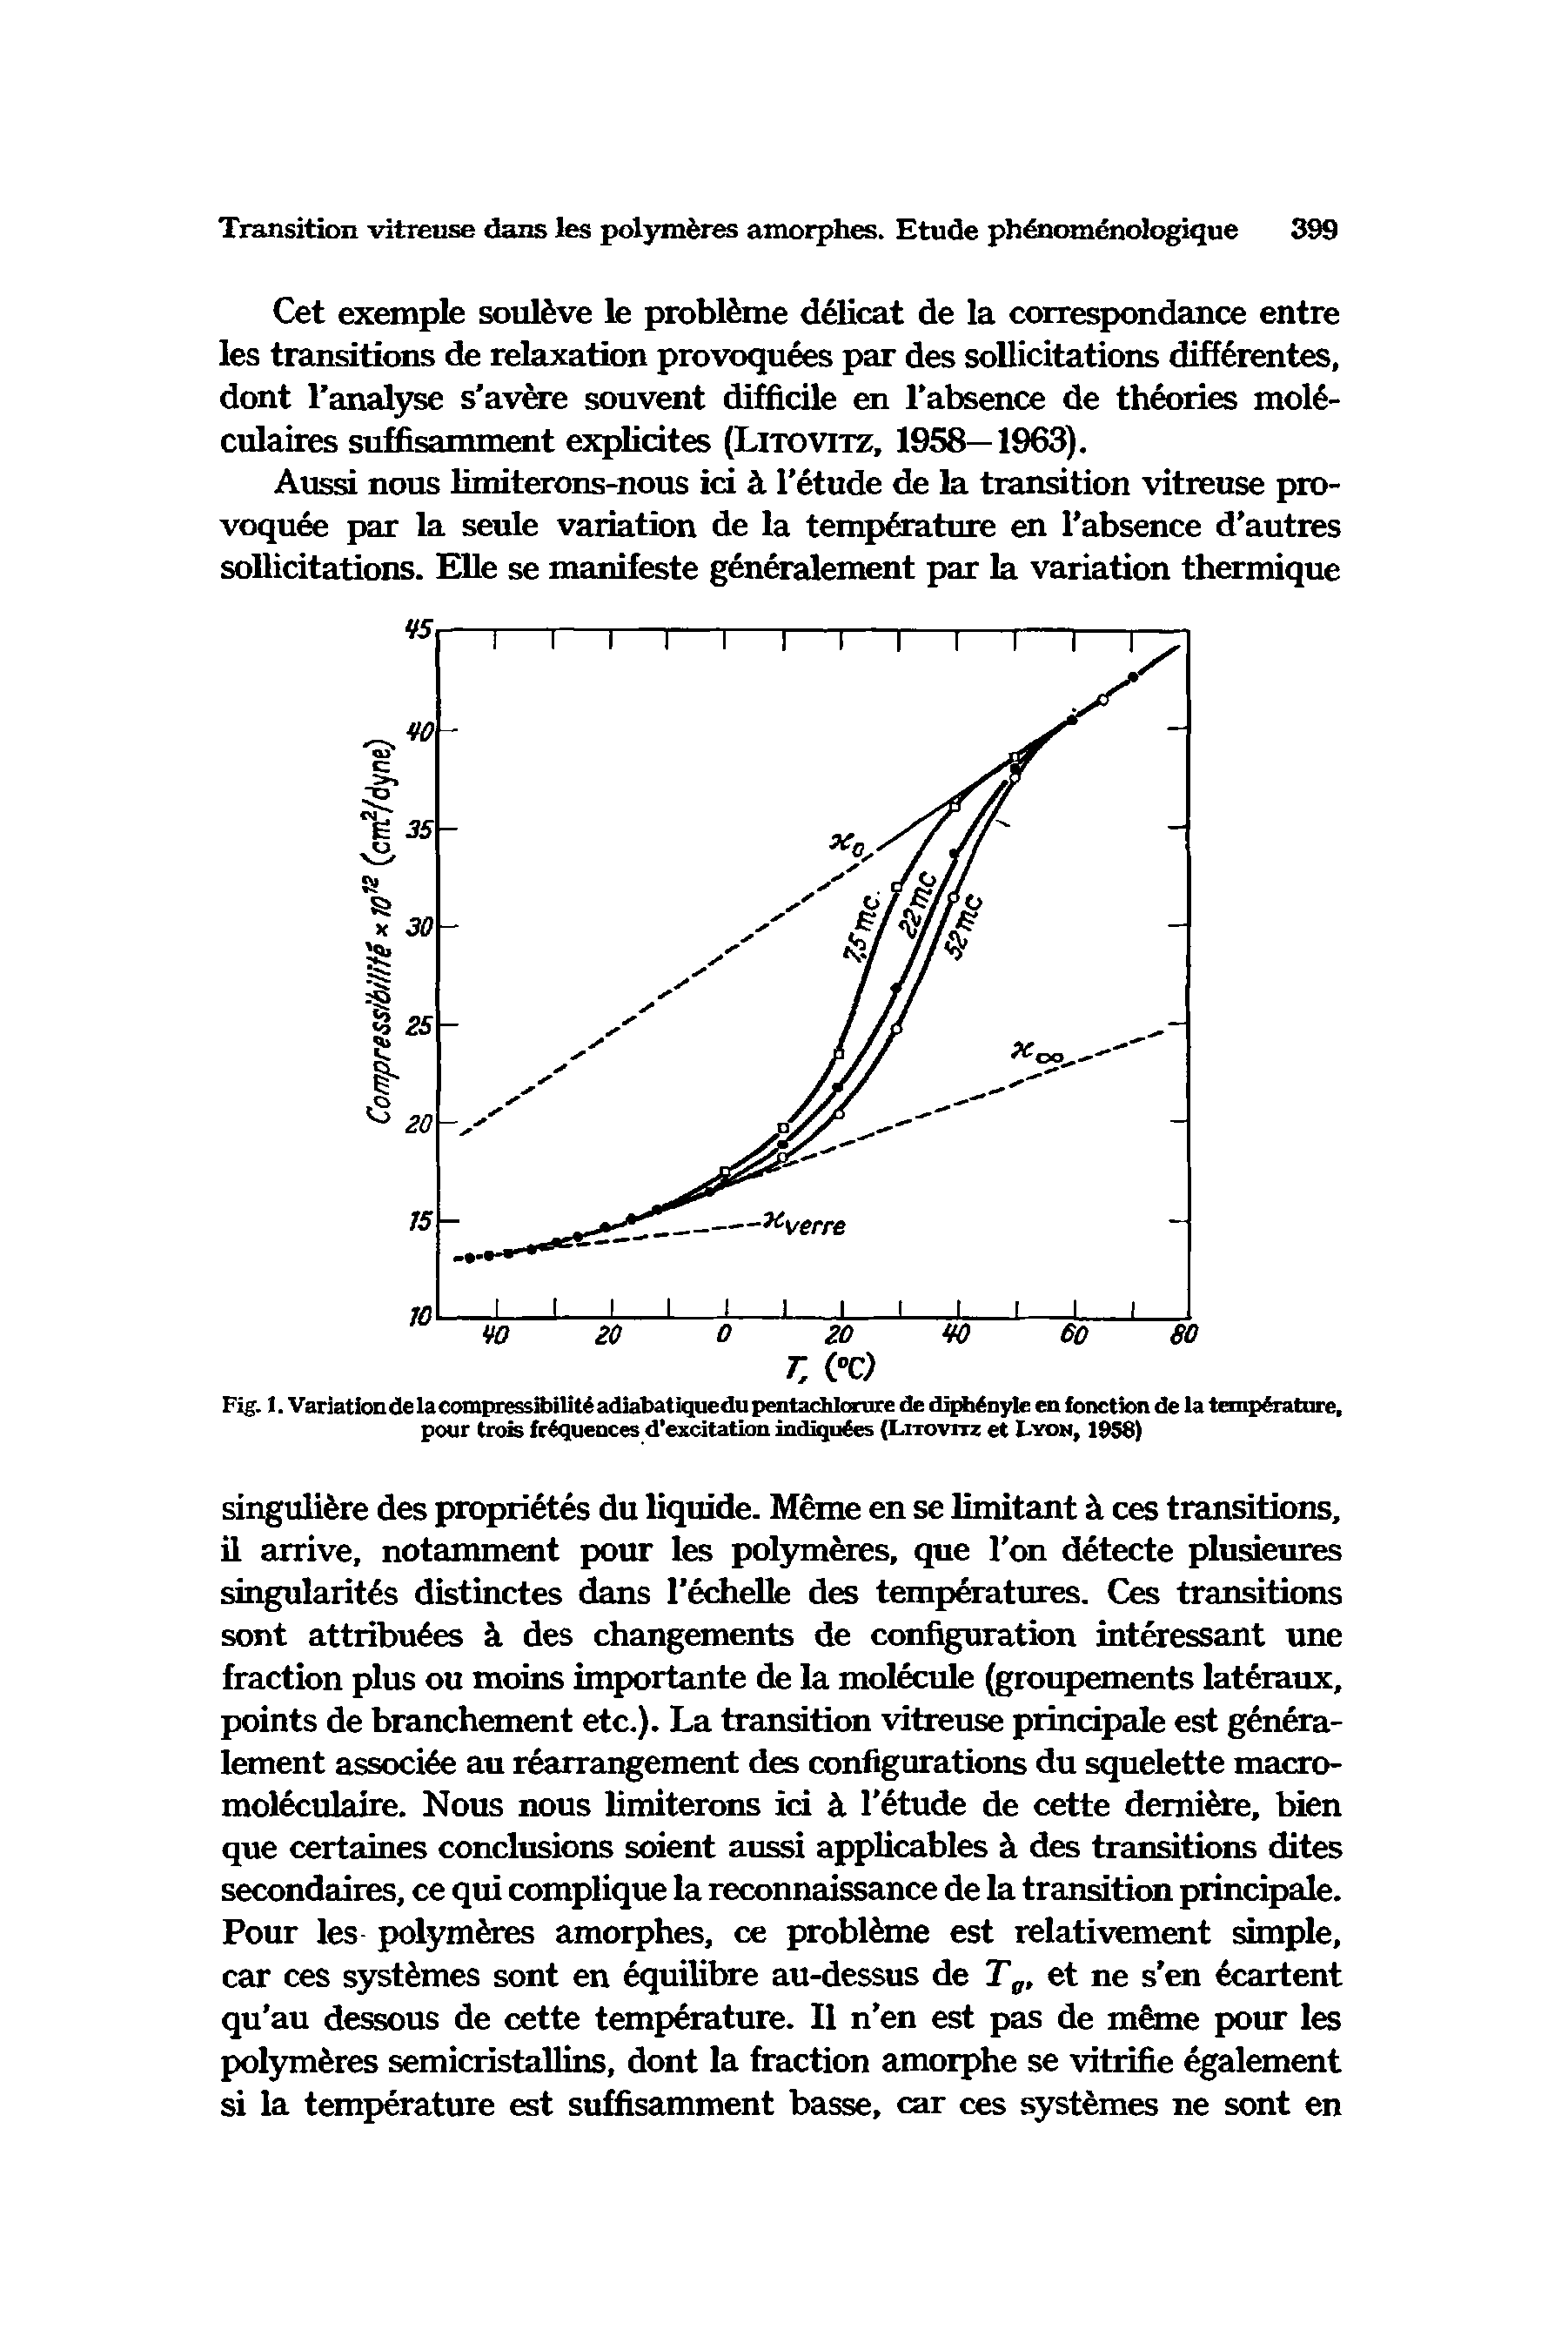 Fig. 1. Variation de la compressibility adiabat iquedu pentachlorure de diph nyle en fonction de la temperature, pour trois frequences d excitation indiqu6es (Litovitz et Lyon, 1958)...